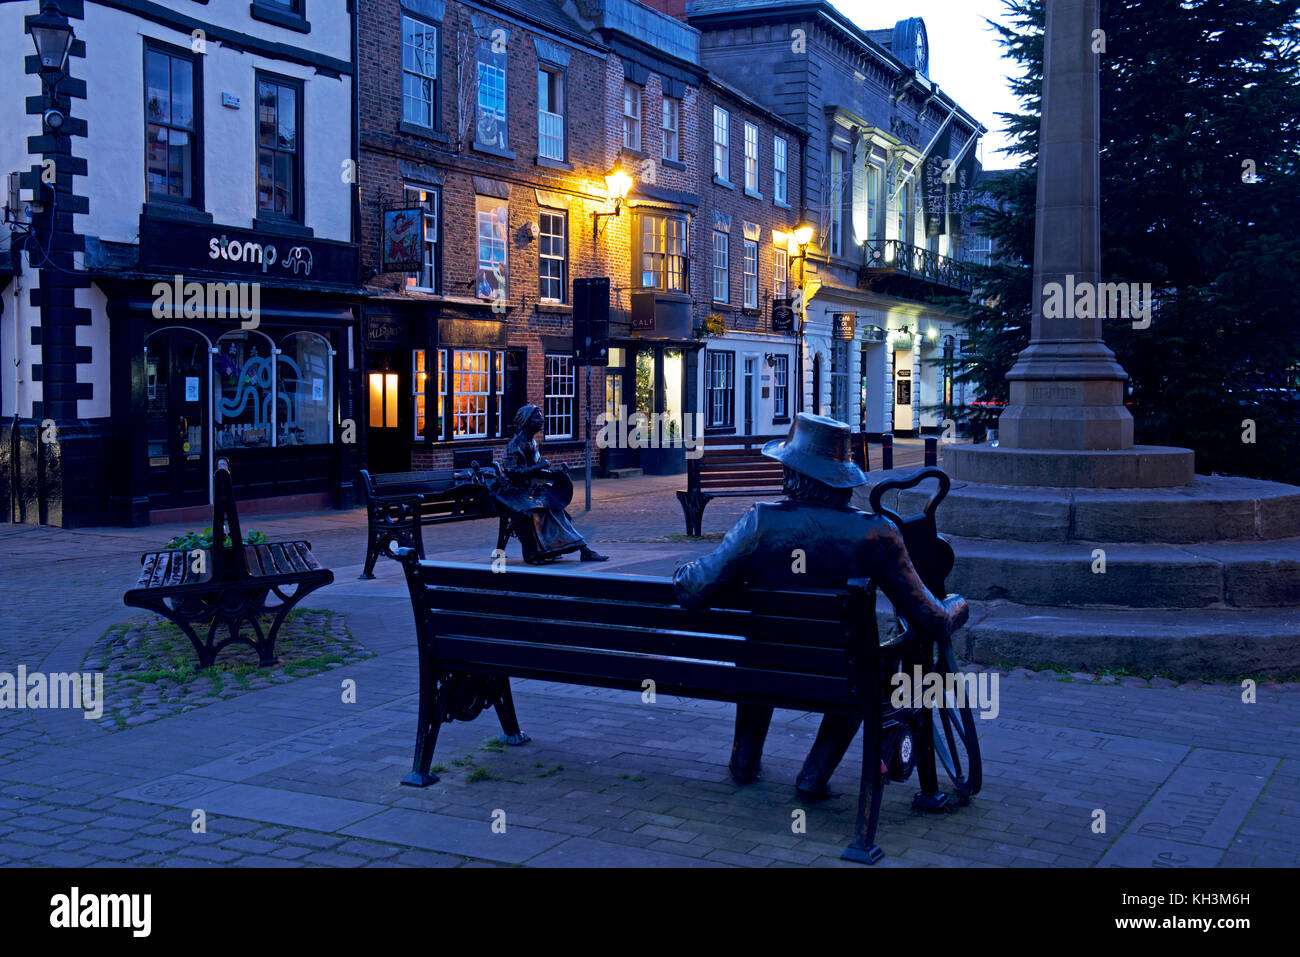 The Market Square at dusk, Knaresborough, North Yorkshire, England UK Stock Photo